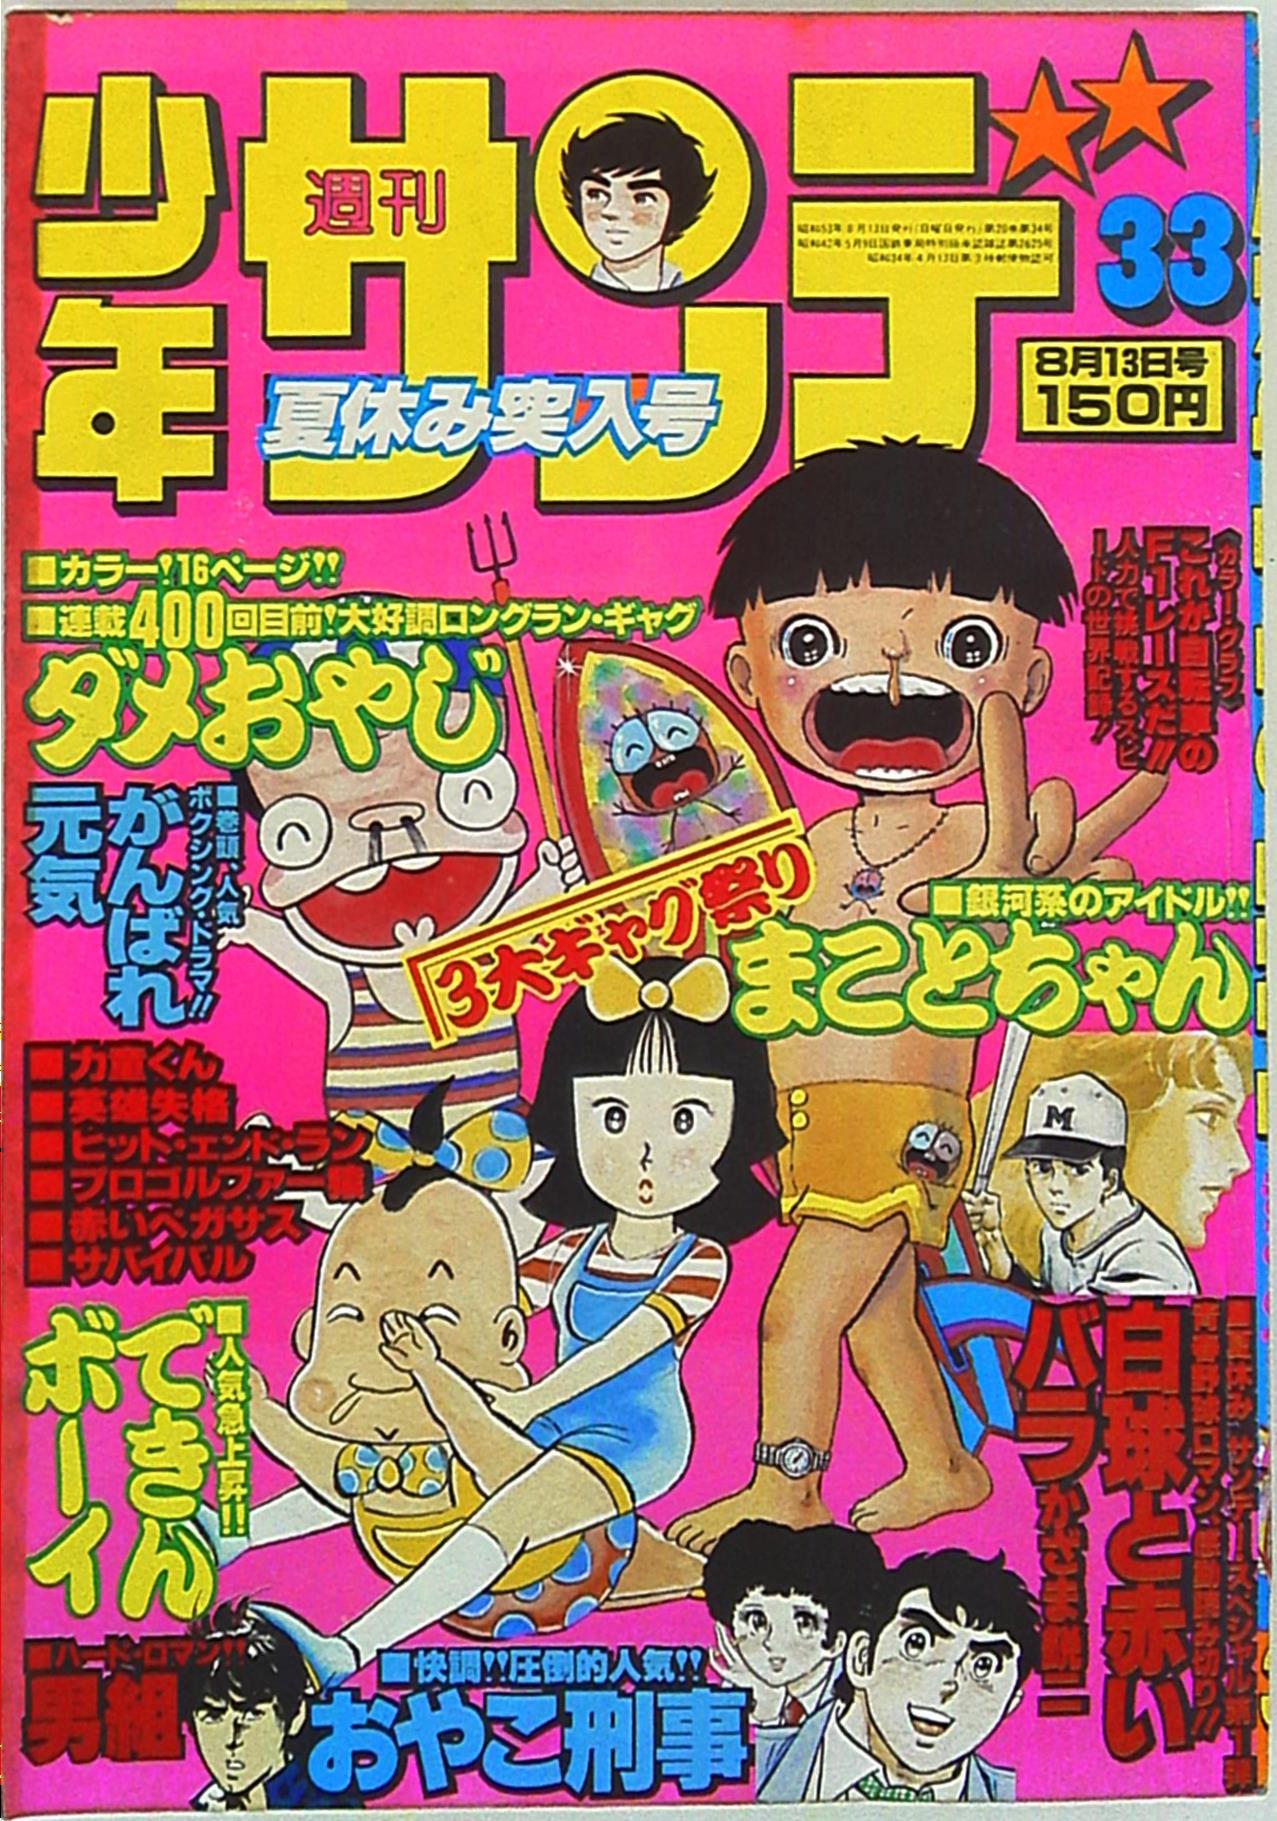 小学館 1978年(昭和53年)の漫画雑誌 週刊少年サンデー1978年(昭和53年